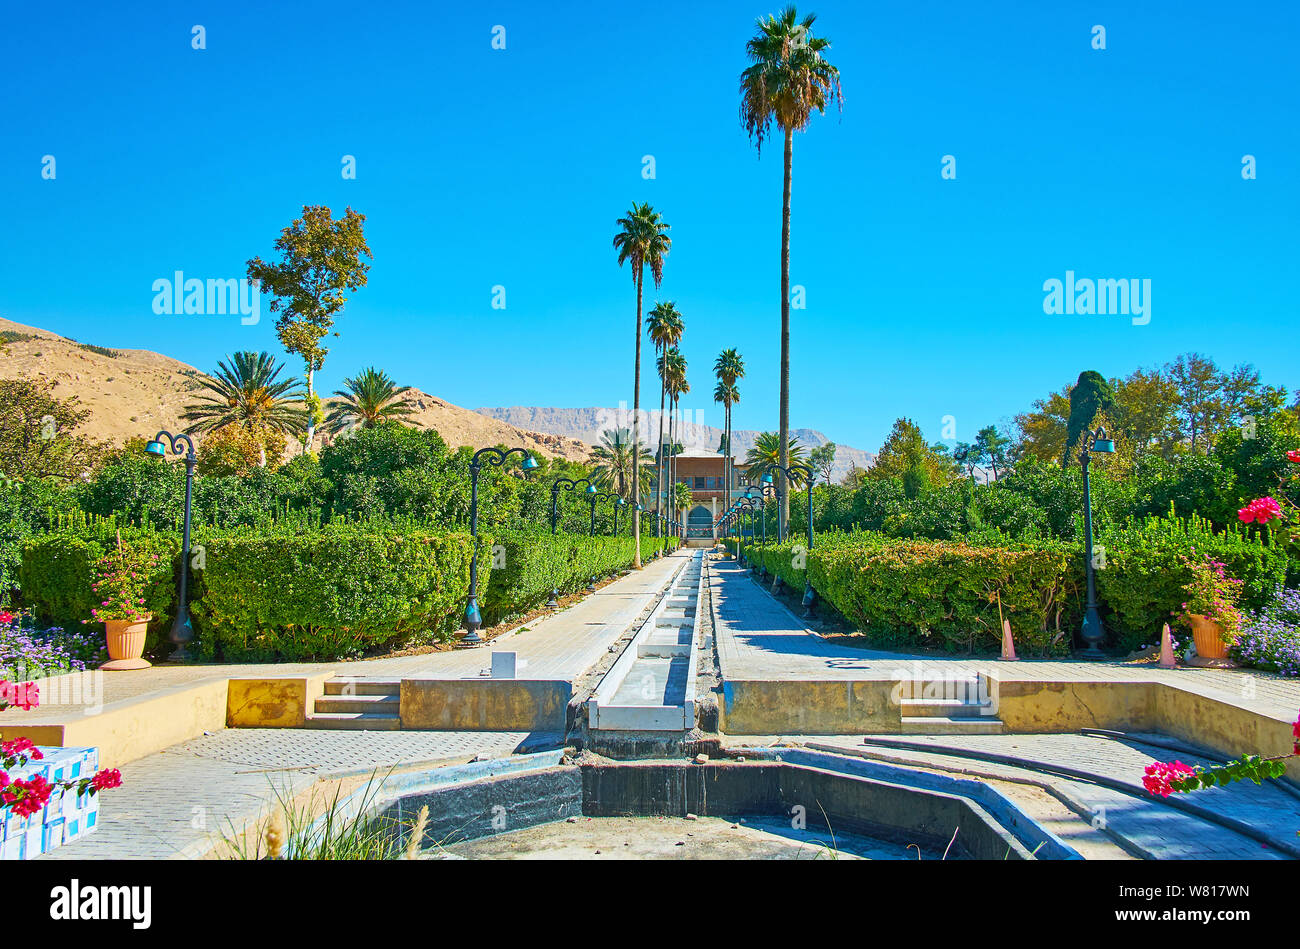 Profitez du jardin Delgosha pittoresque avec de grands palmiers, plantes topiaires et ombragé alley, situé au pied de la roche de dessert, Shiraz, Iran Banque D'Images